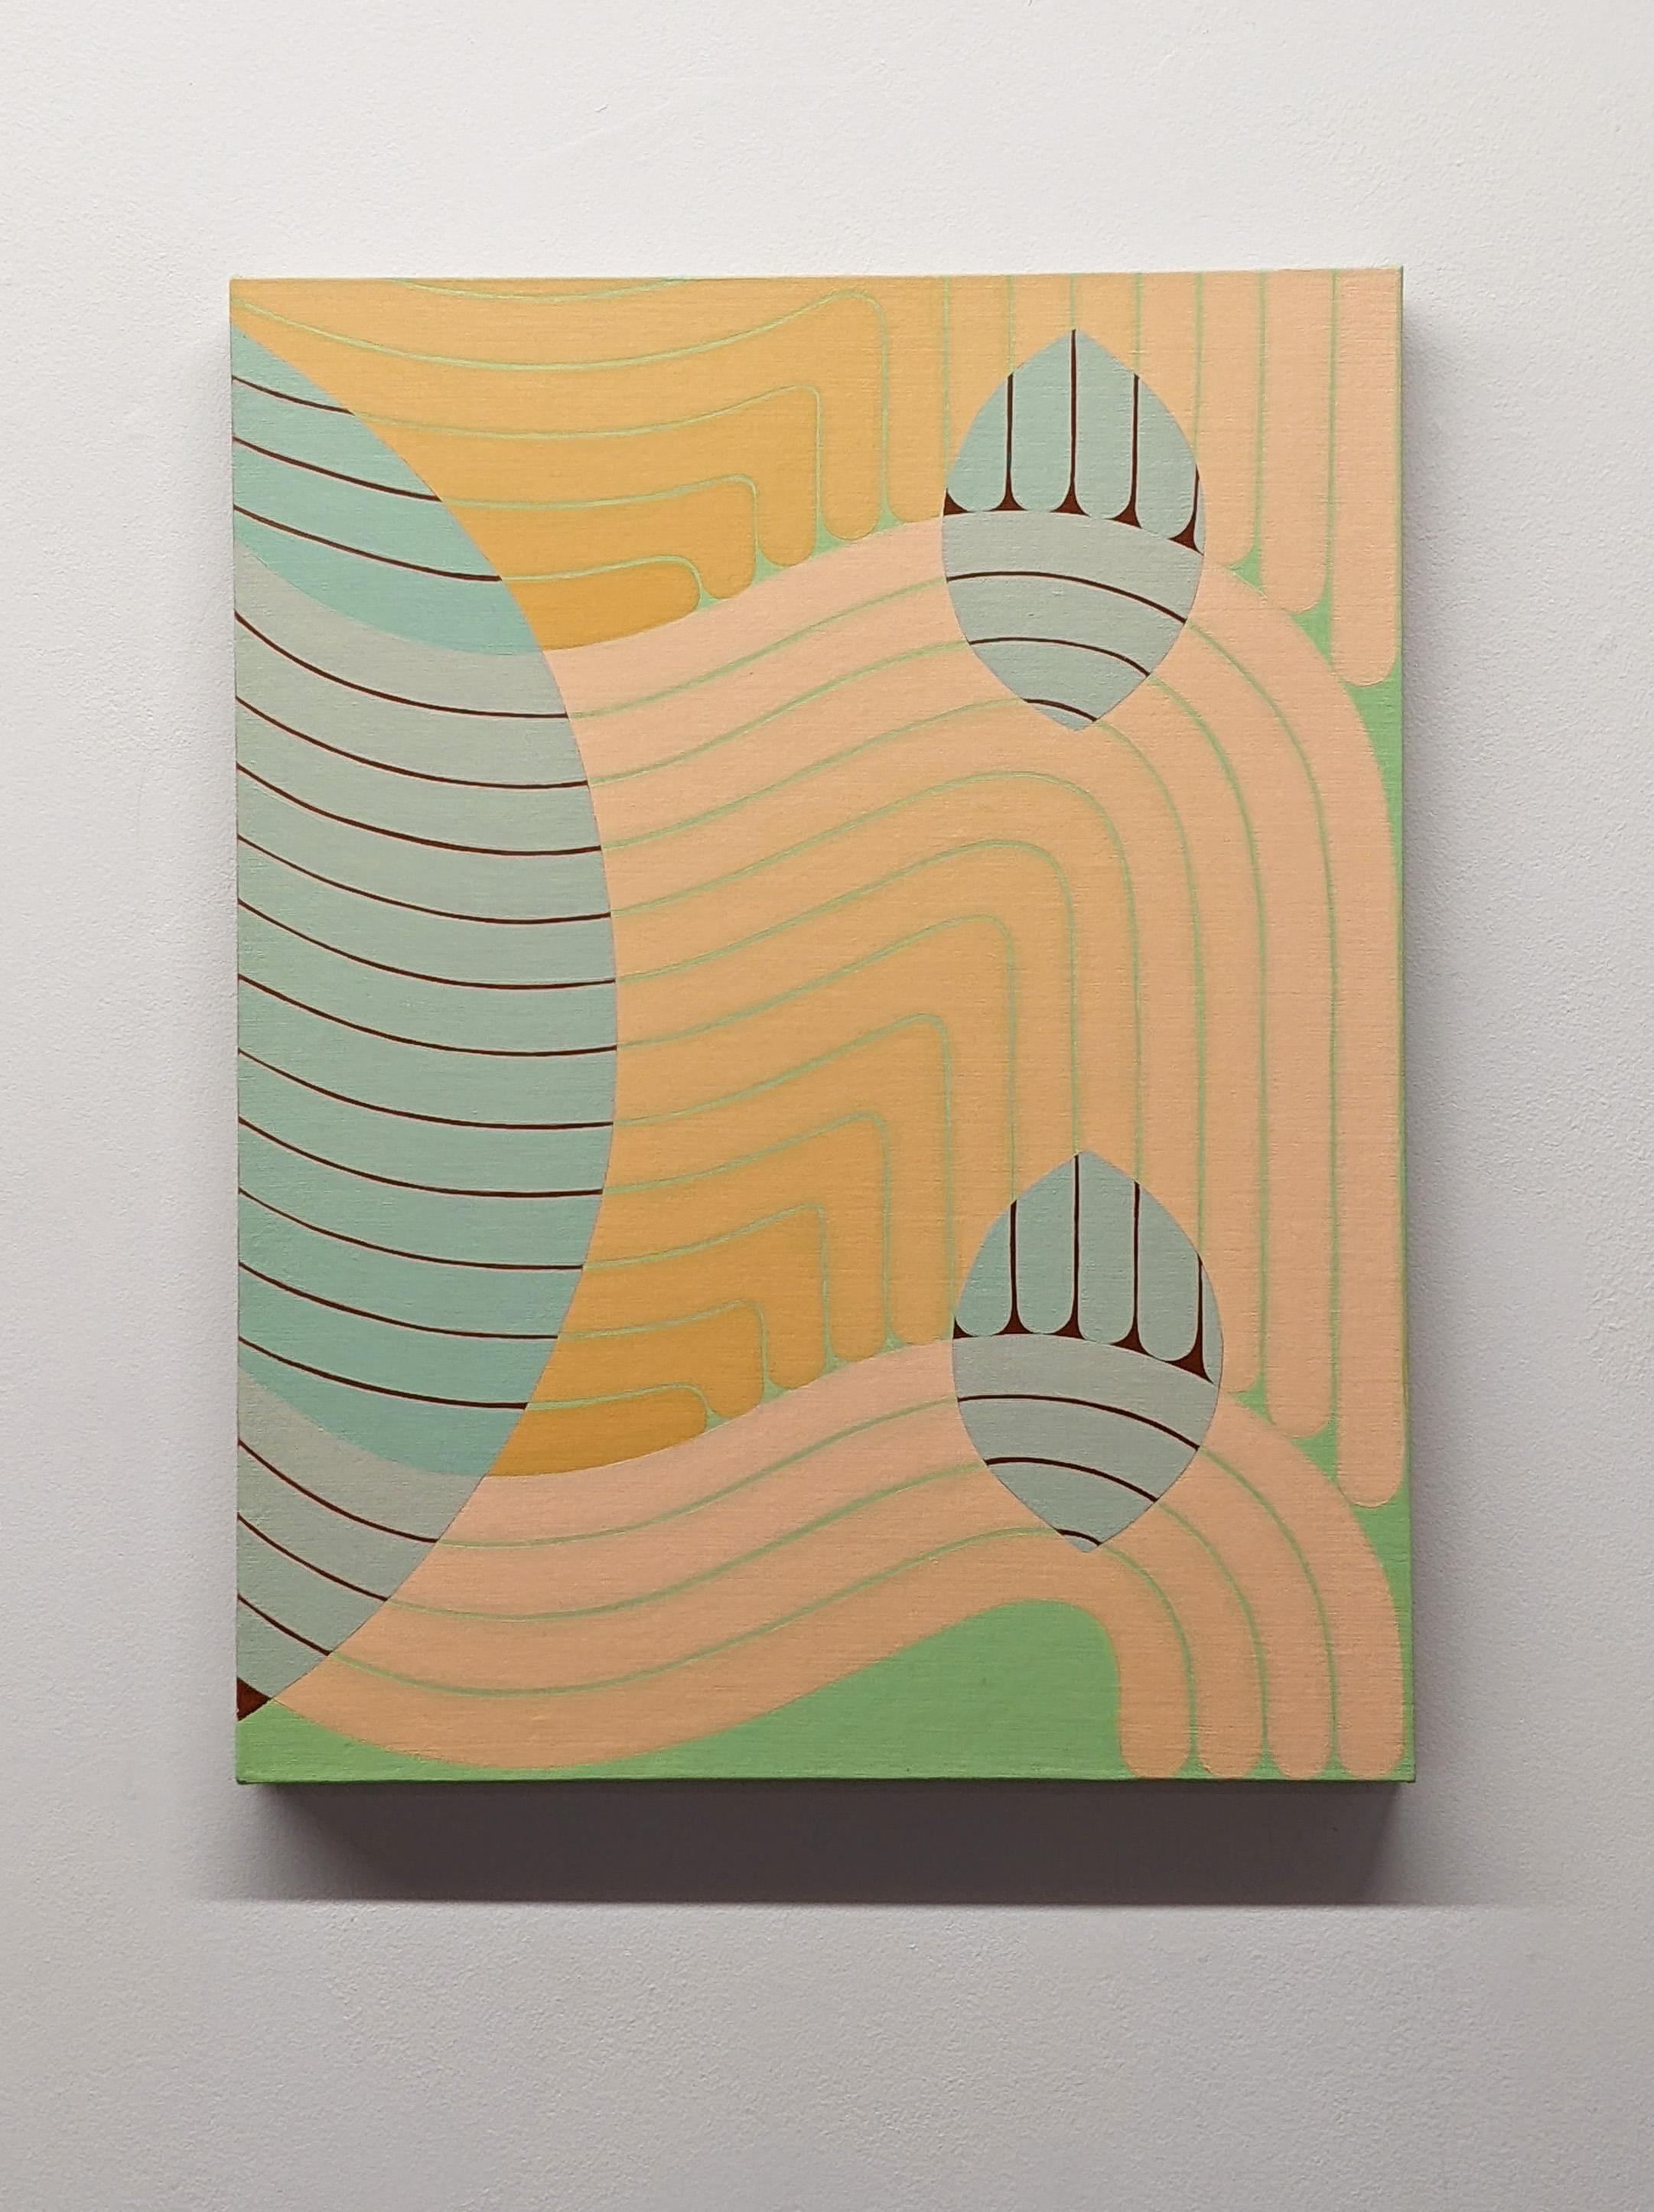 Tandem, pêche, bleu menthe, vert clair peinture abstraite géométrique, lignes courbes - Painting de Jenny Kemp